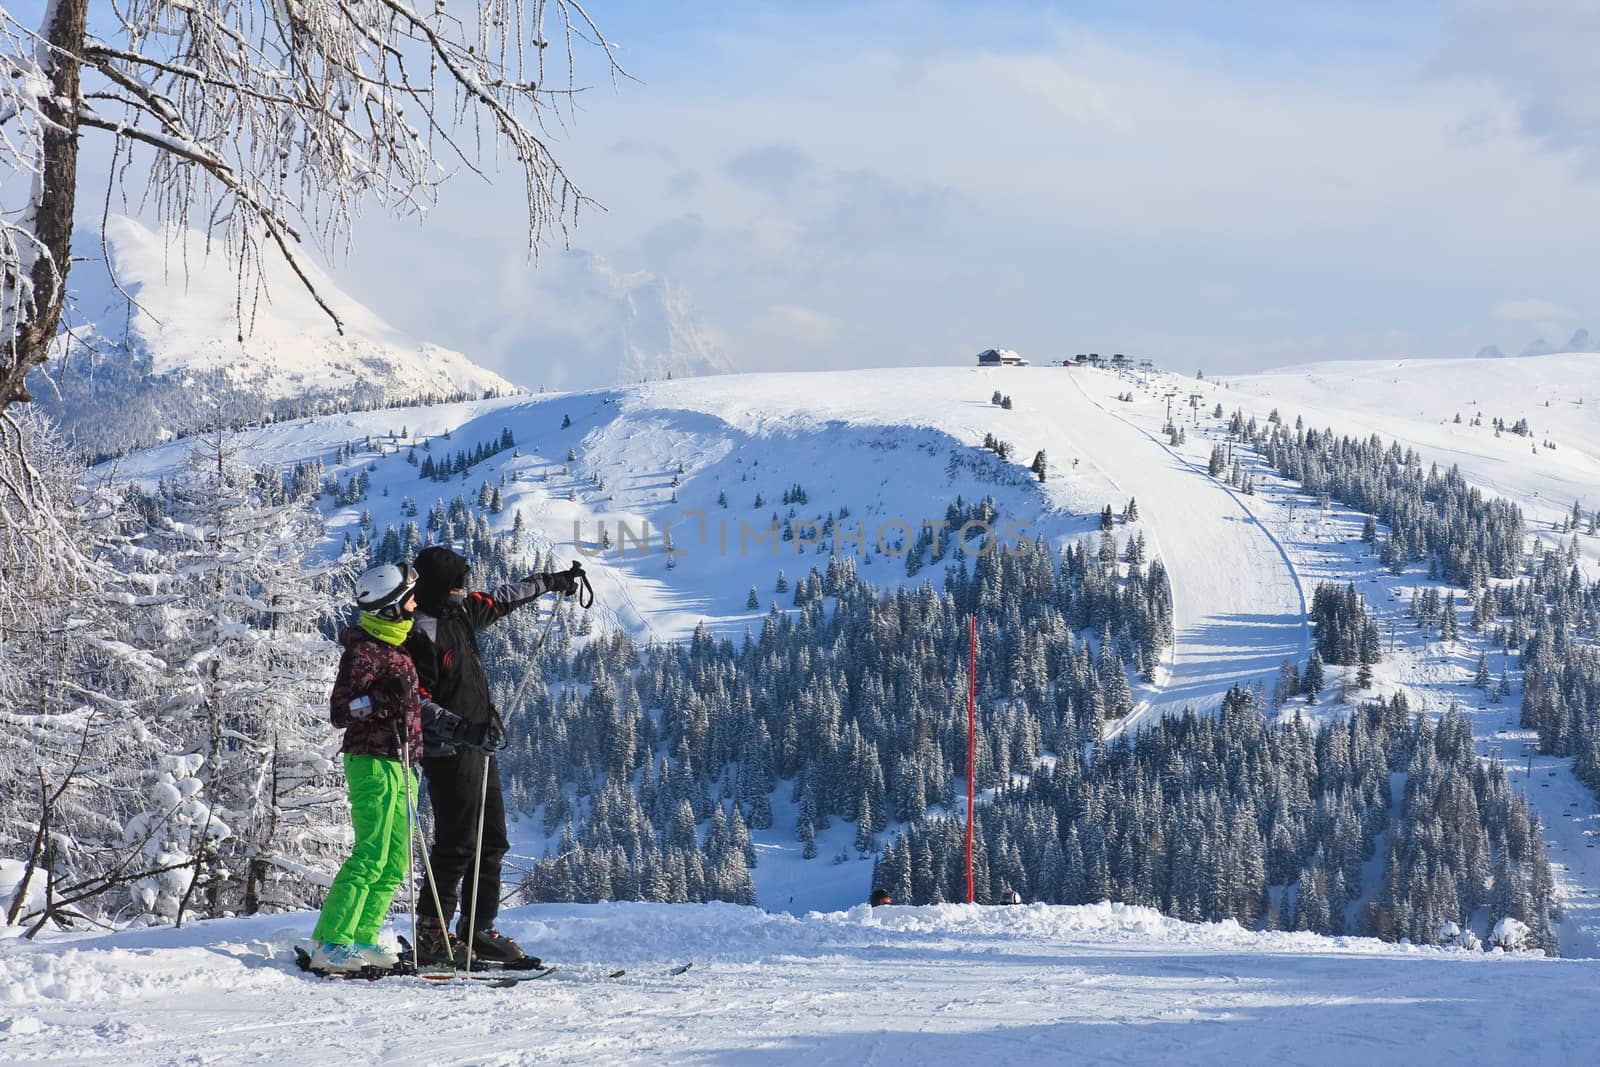 Ski resort of Selva di Val Gardena, Italy by nikolpetr